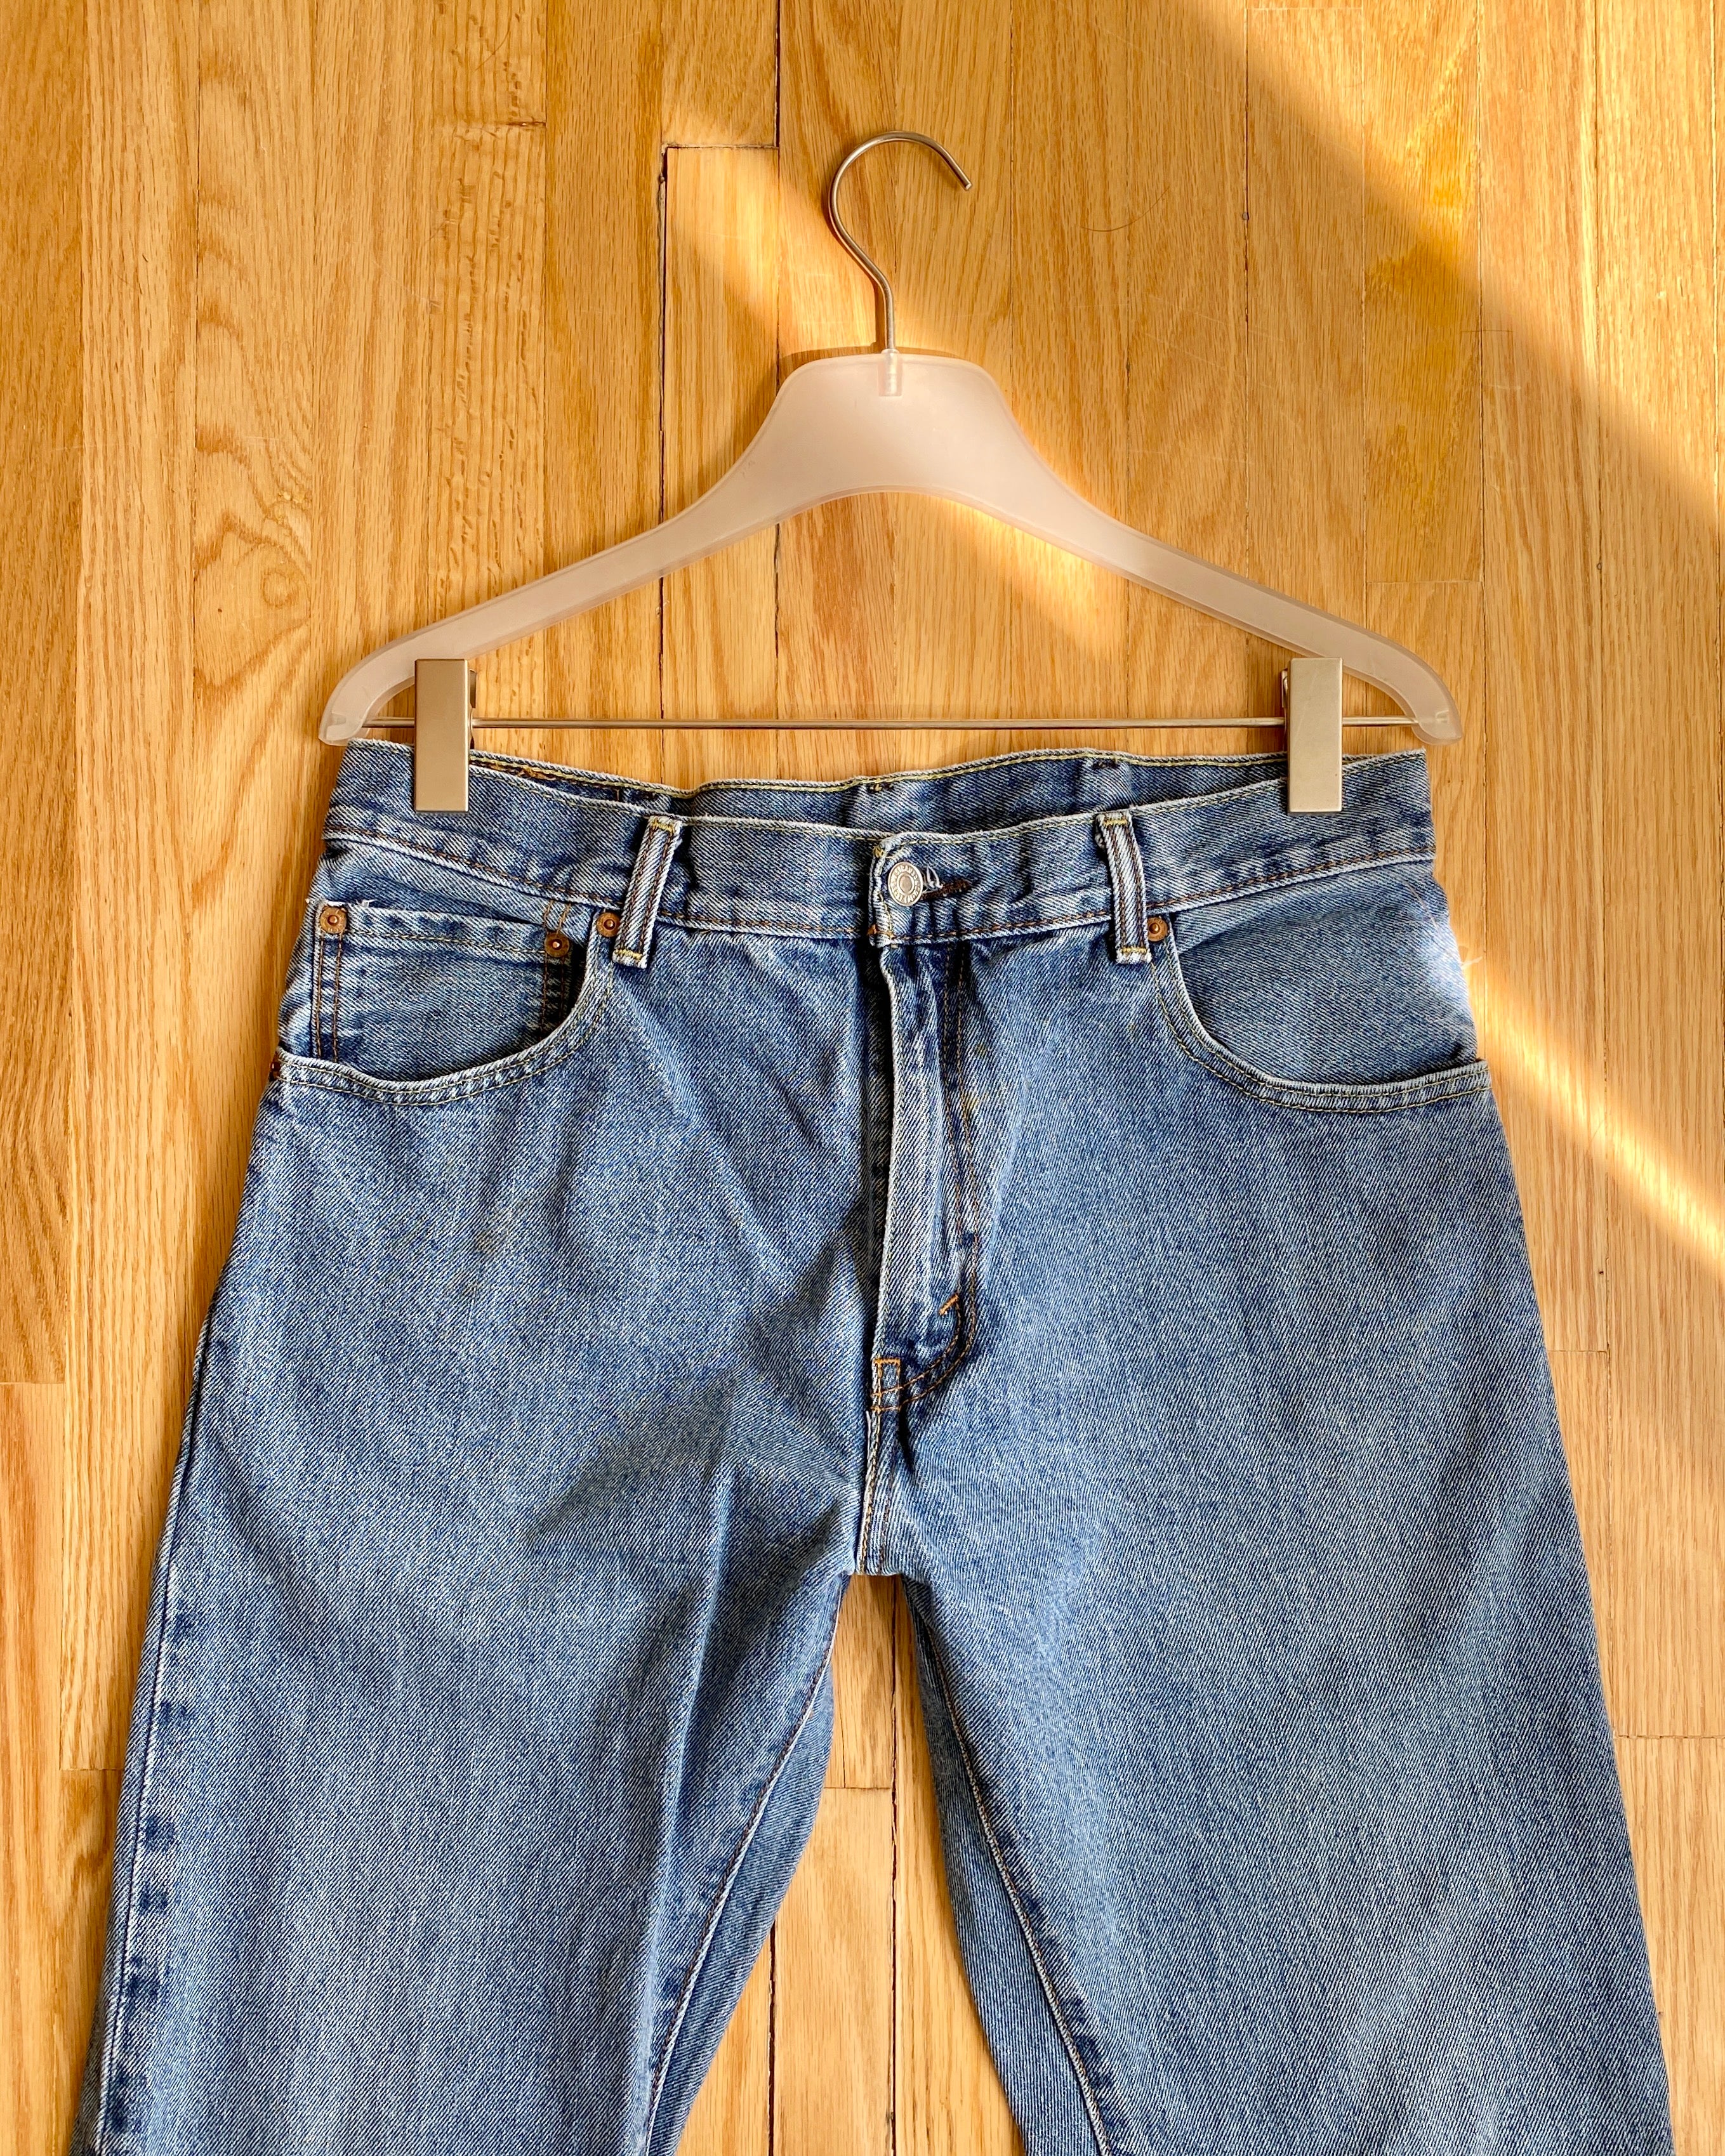 Vintage Mens Levis 517 Medium Wash Jeans size 33